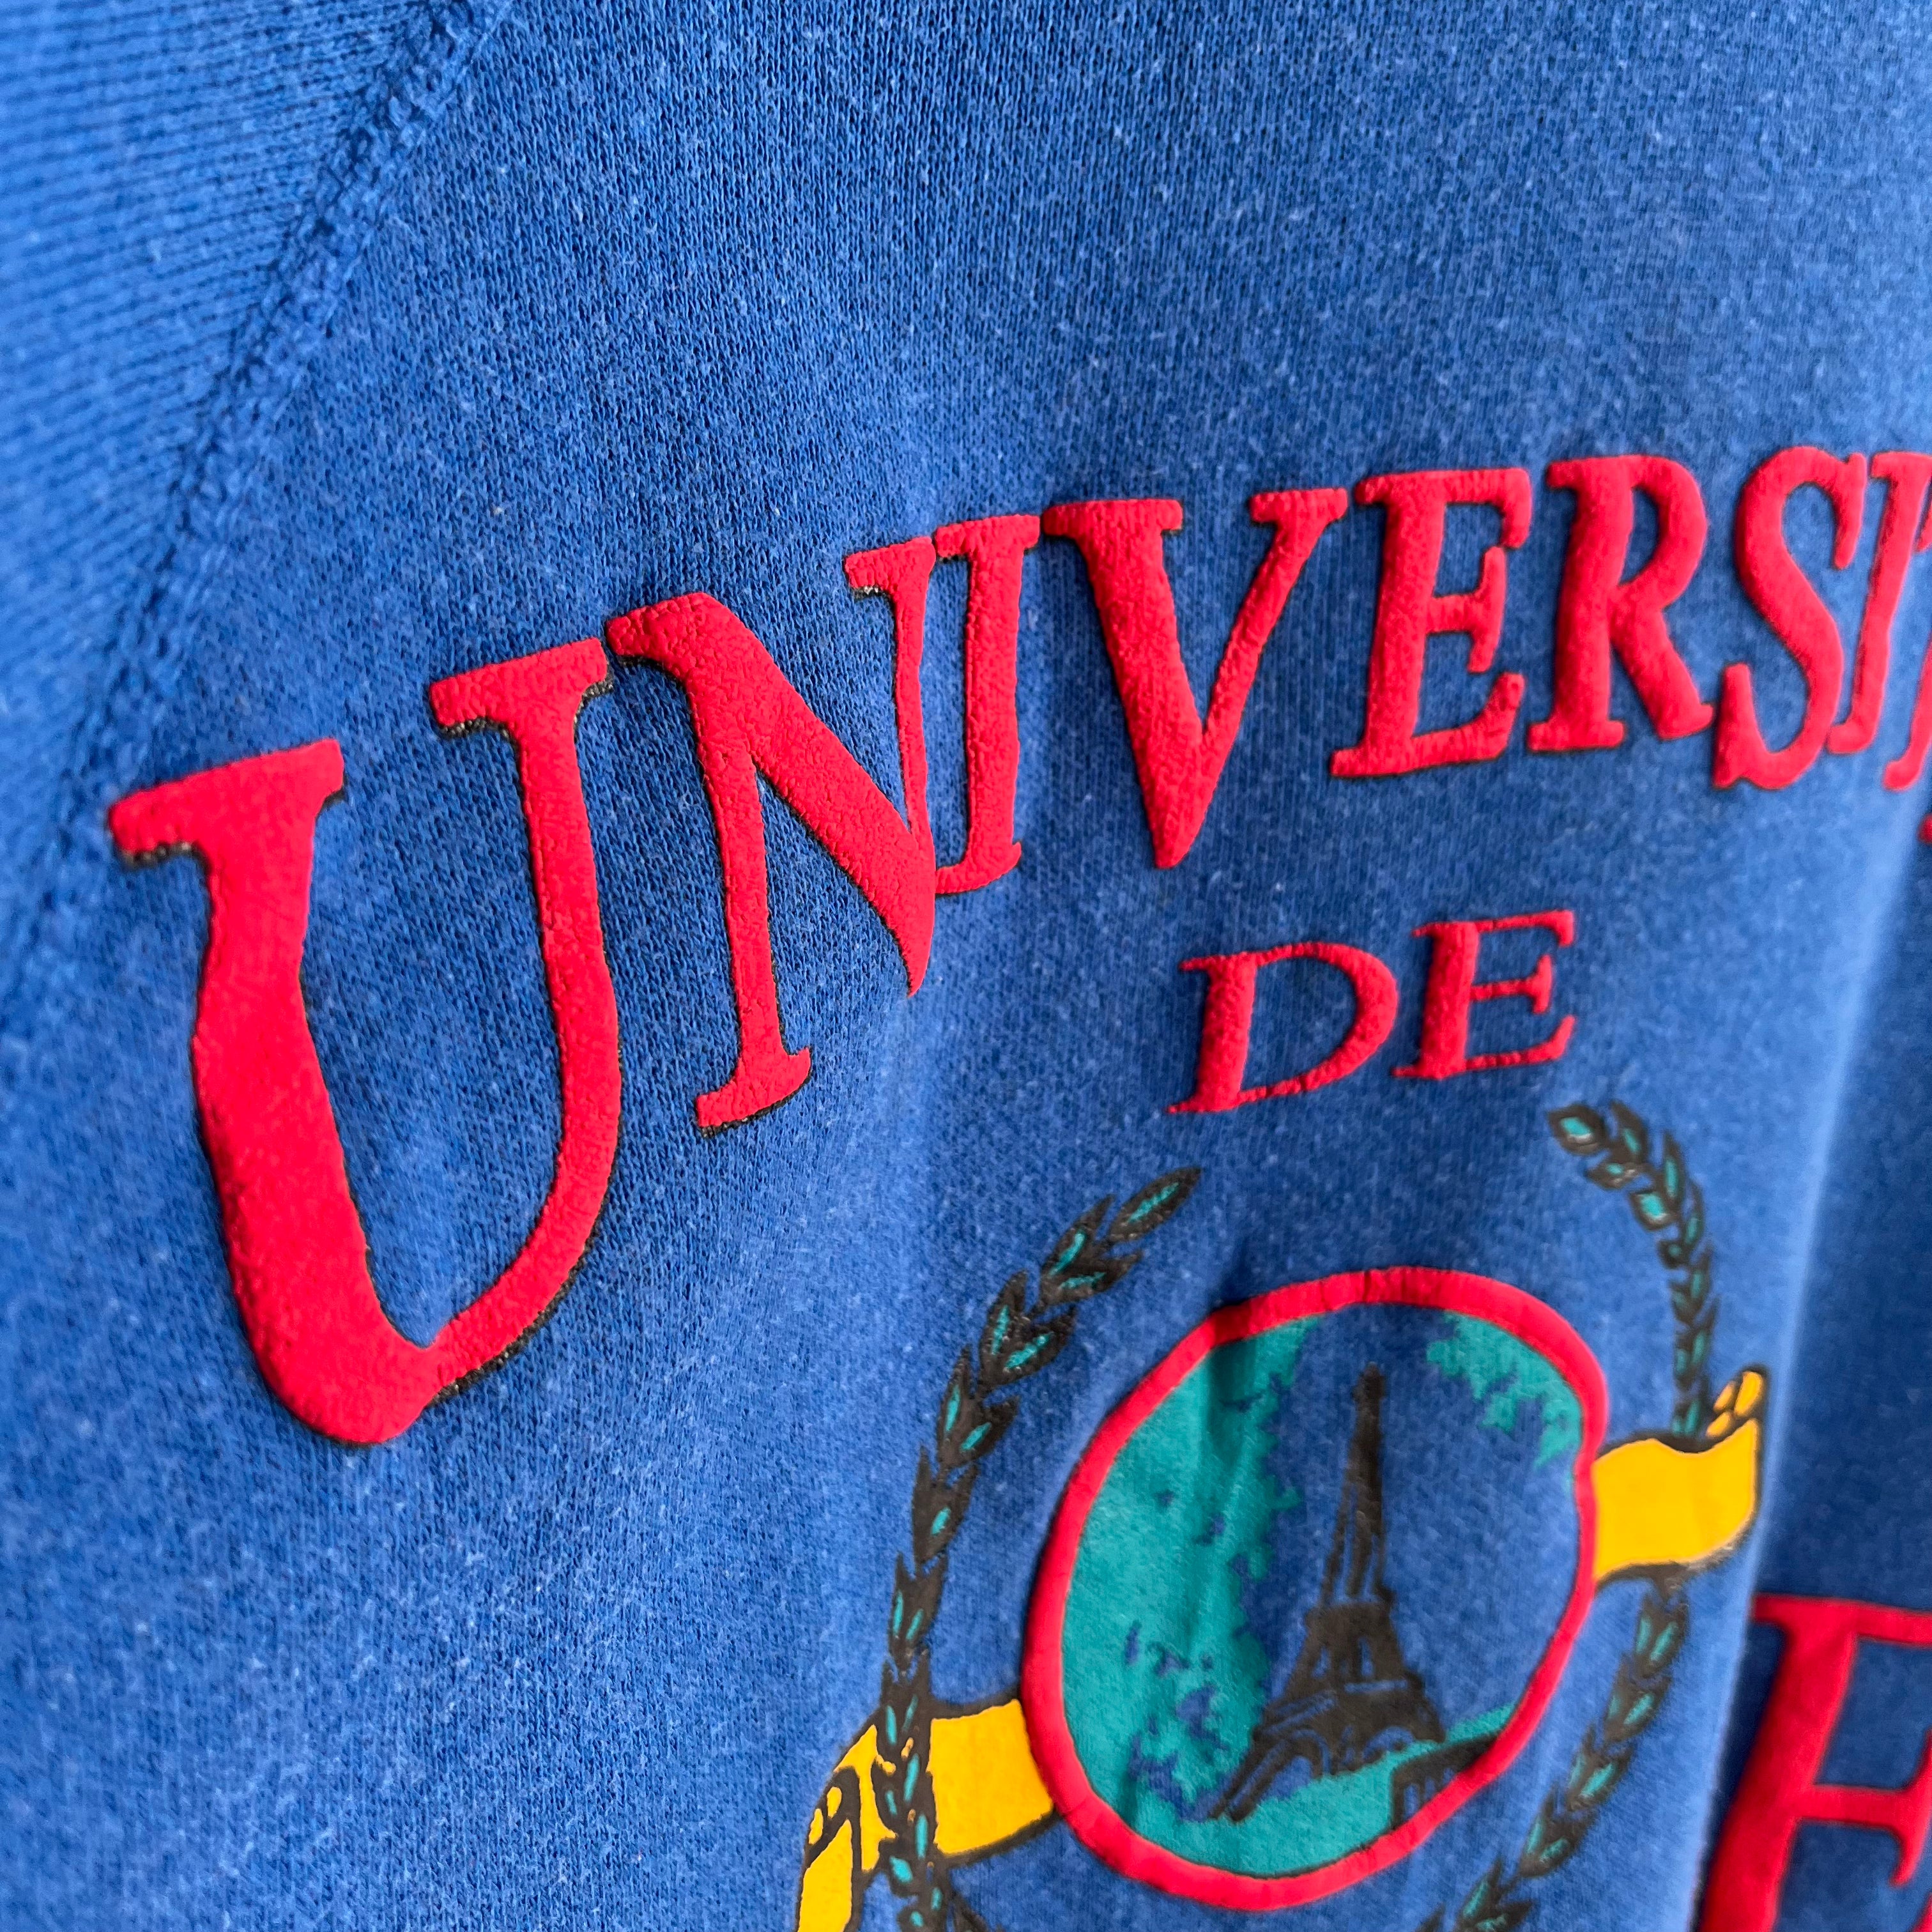 1980s Universite De Francaise USA Made Sweatshirt par Tultex